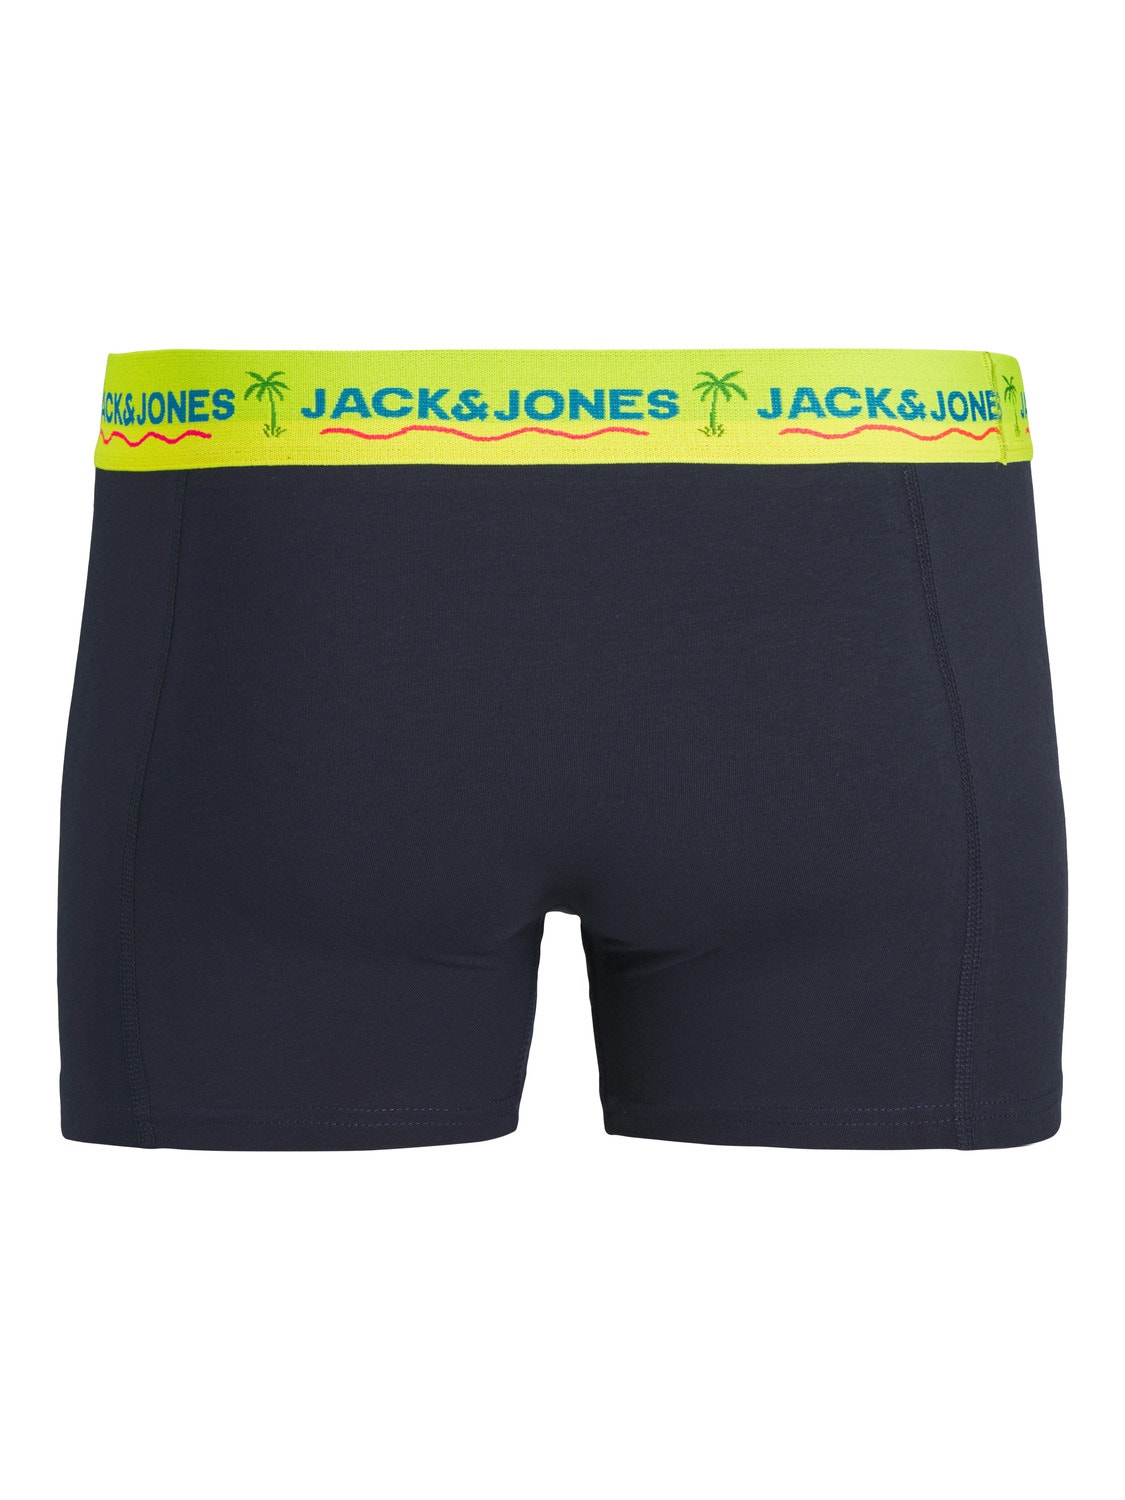 Jack & Jones Pack de 3 Boxers -Navy Blazer - 12250609